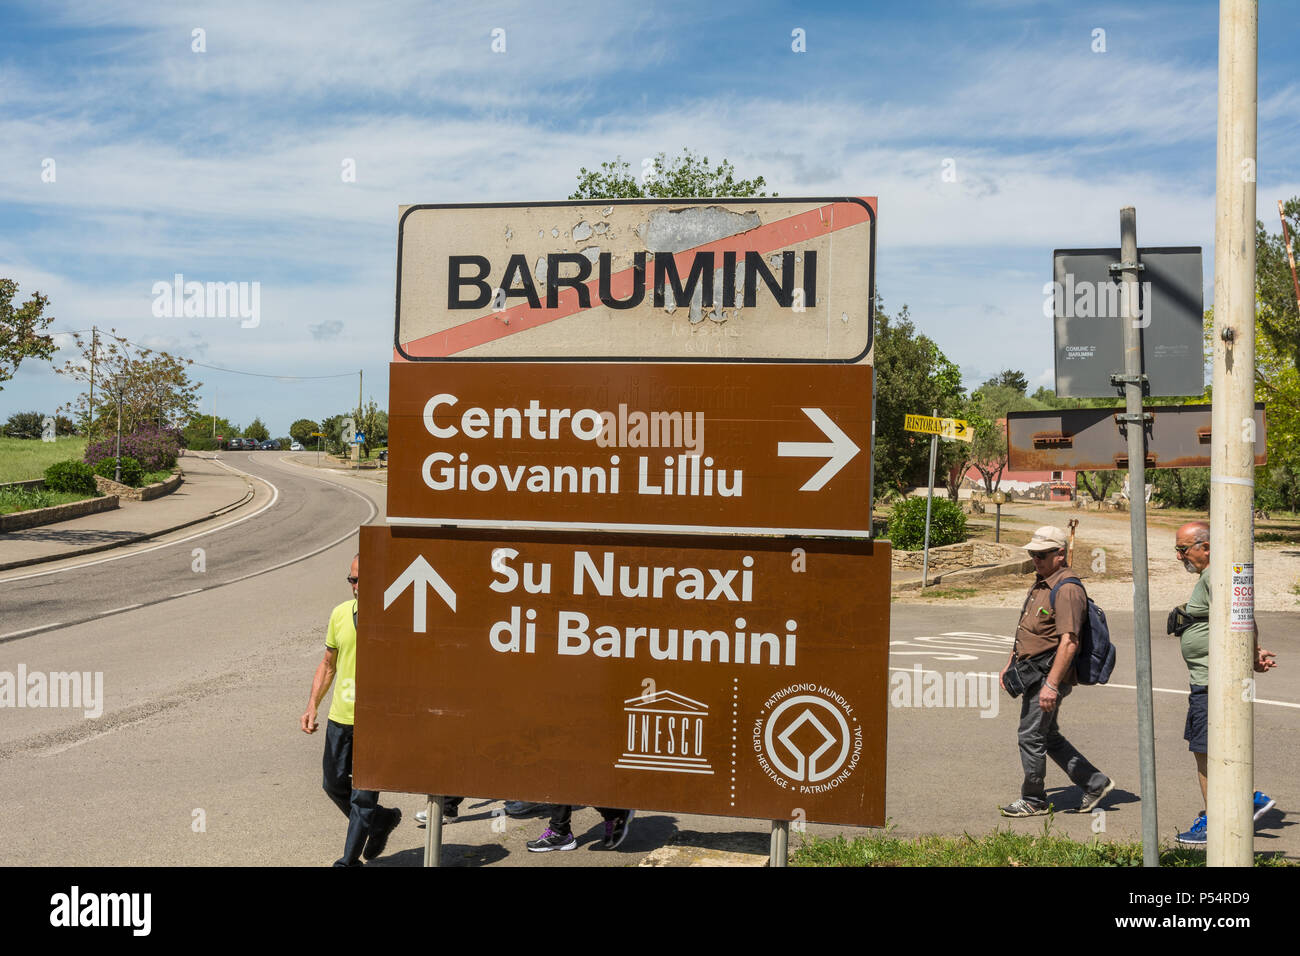 Cartello stradale per il centro del comune di Barumini e per il sito archeologico del villaggio nuragico 'su Nuraxi' - Sardegna - Italia Foto Stock